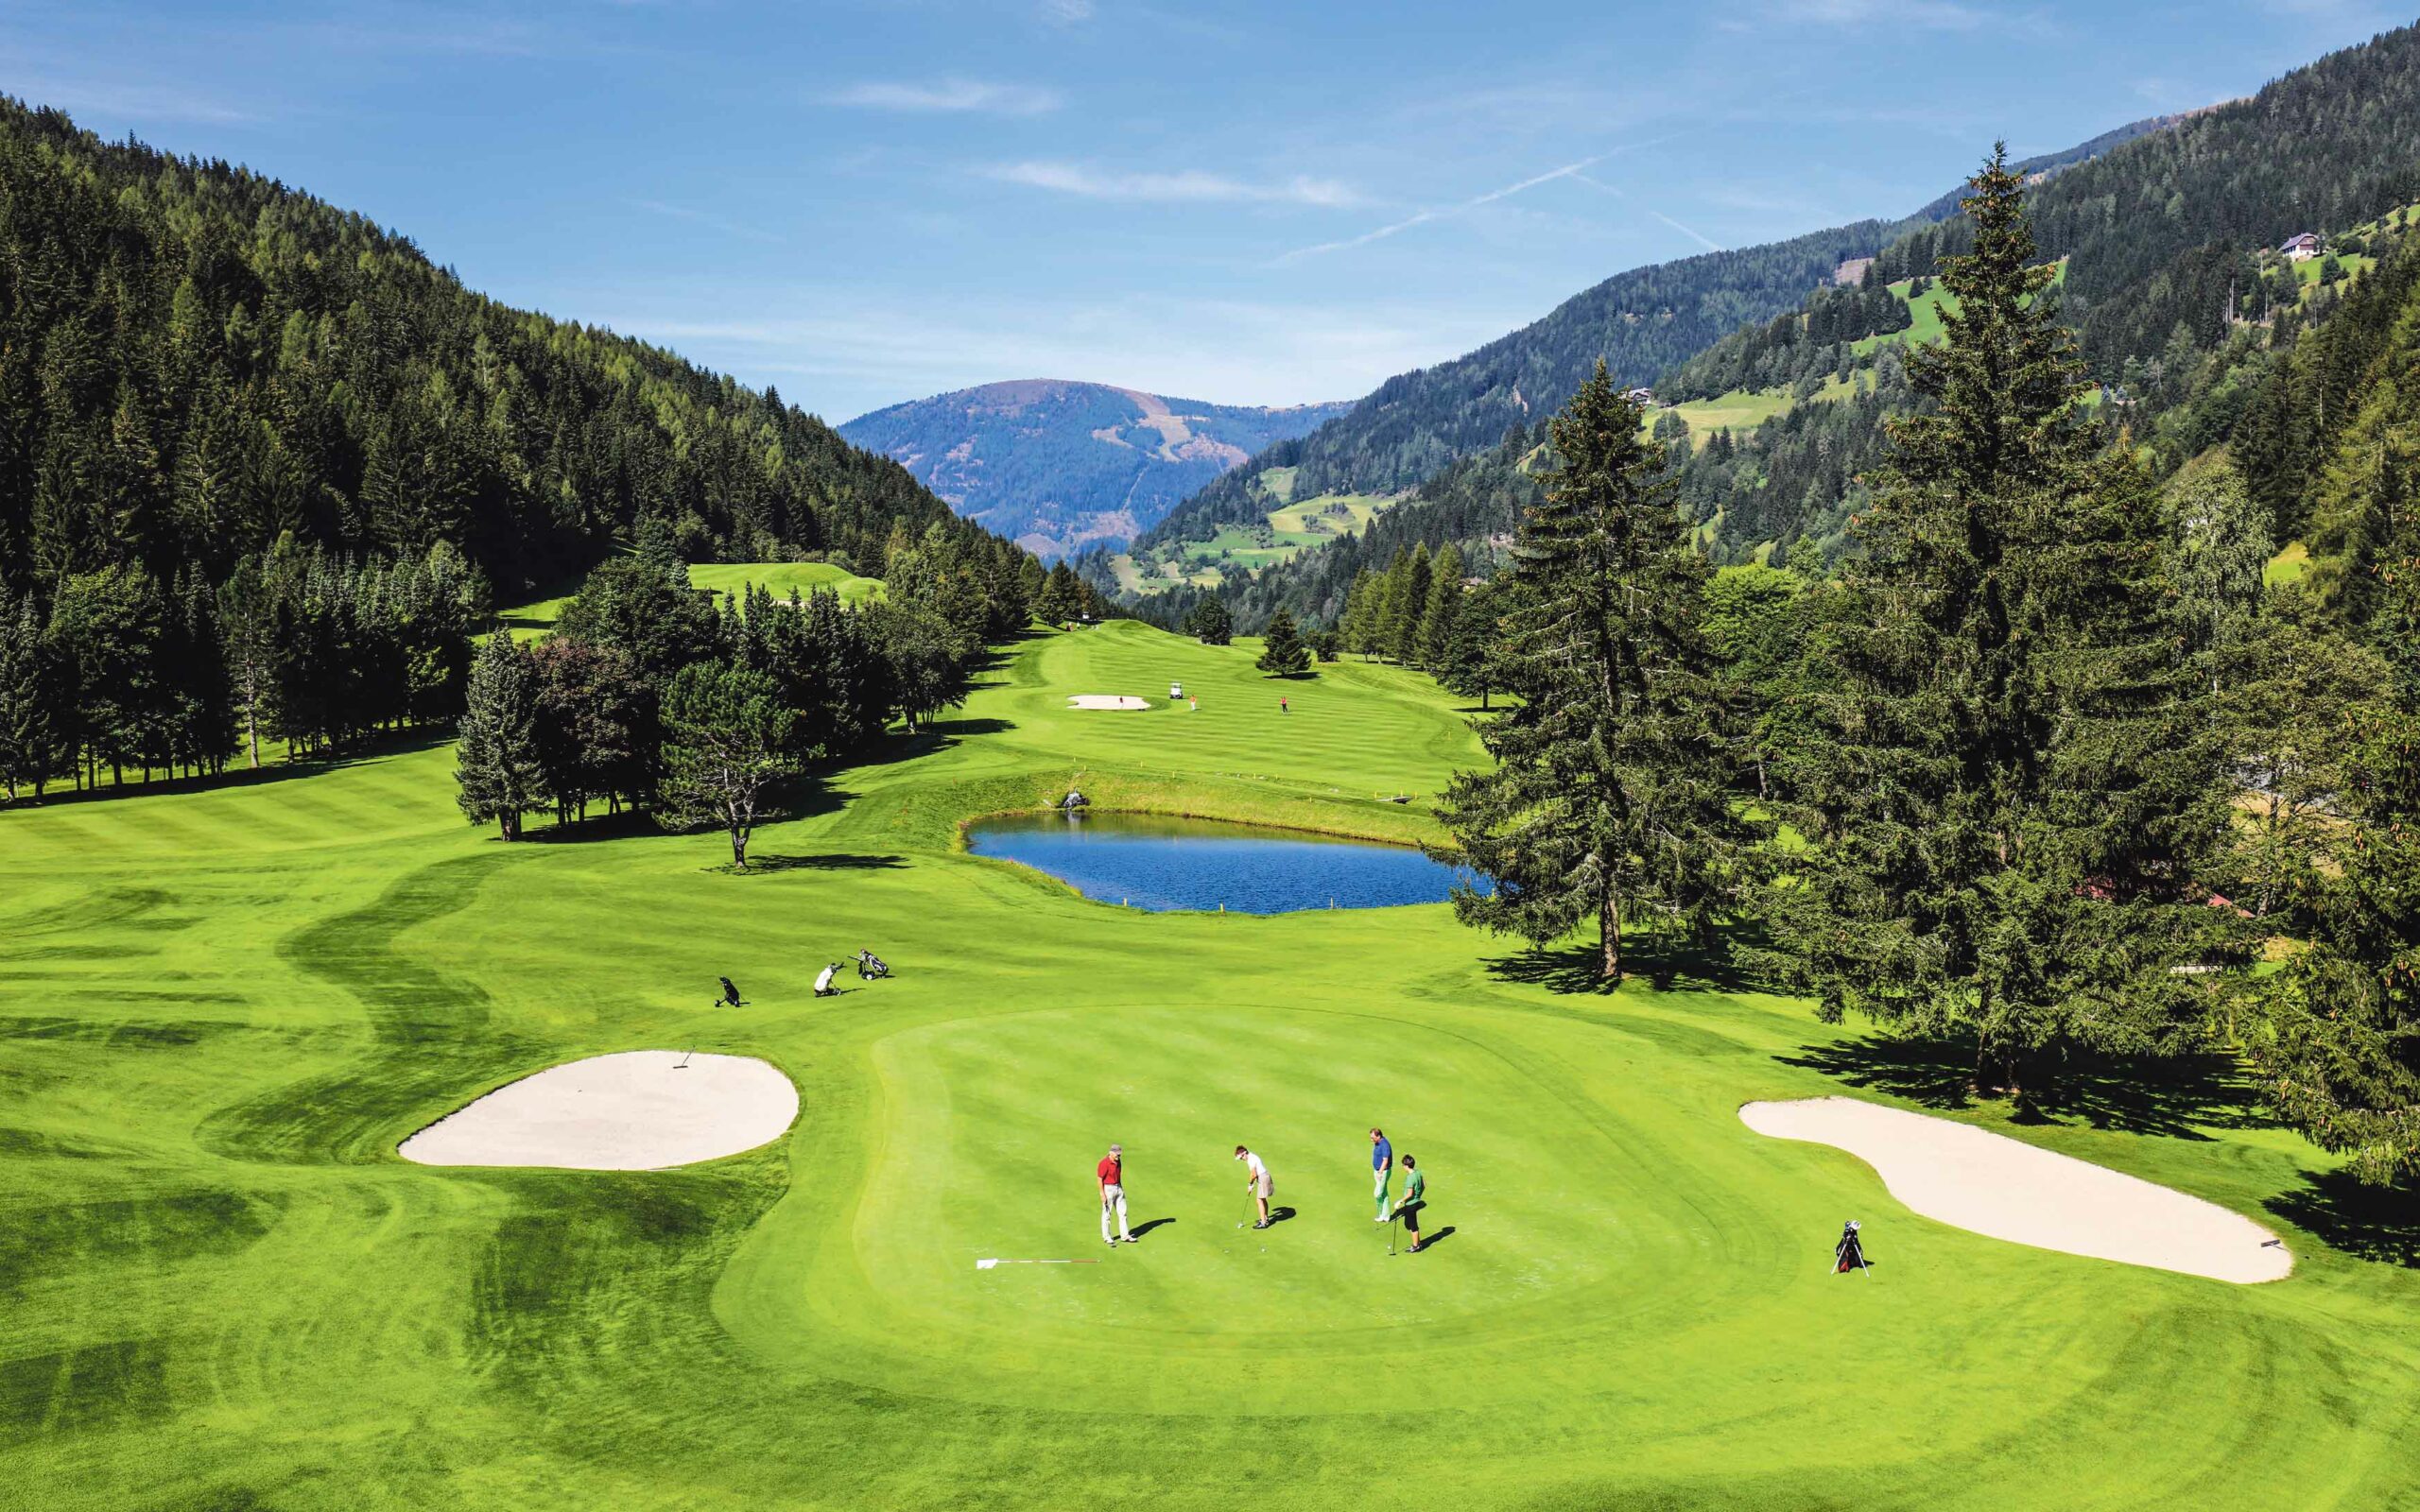 Kärnten hat einige der schönsten Golfplätze Europas zu bieten – auch sonst steht die Tourismusregion hoch im Kurs.